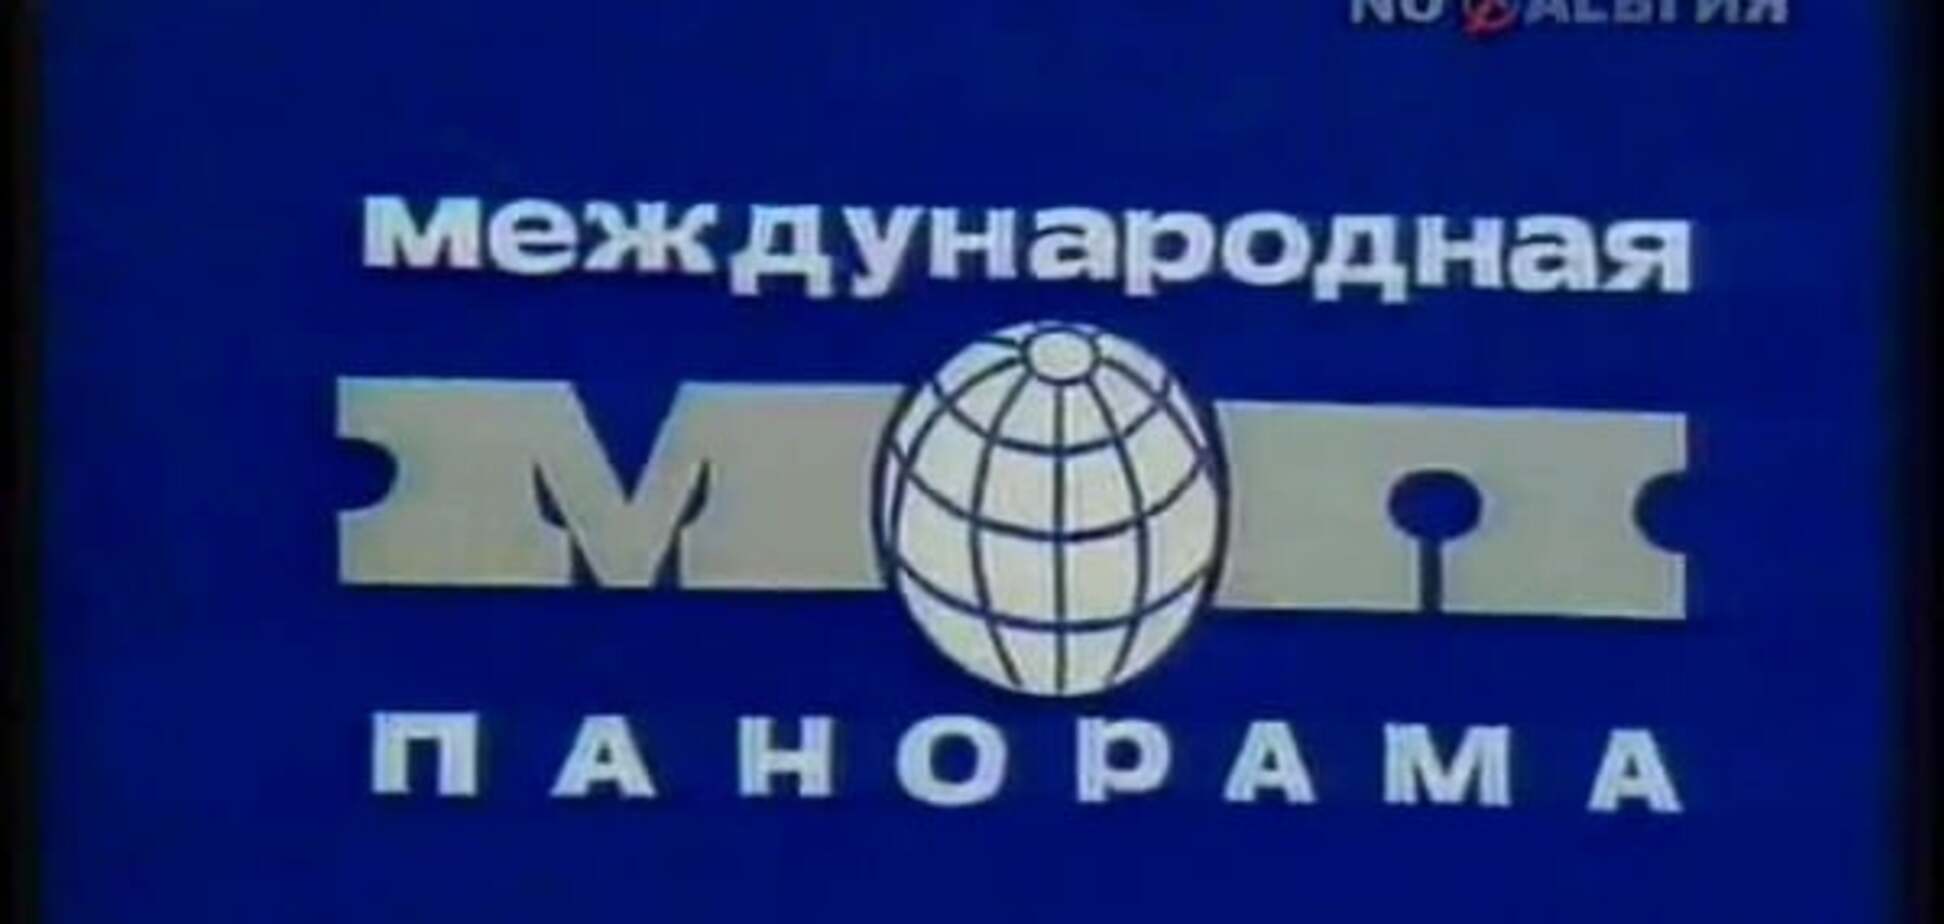 Все повторяется: ТВ СССР в 1982 году тоже шутило над санкциями Запада